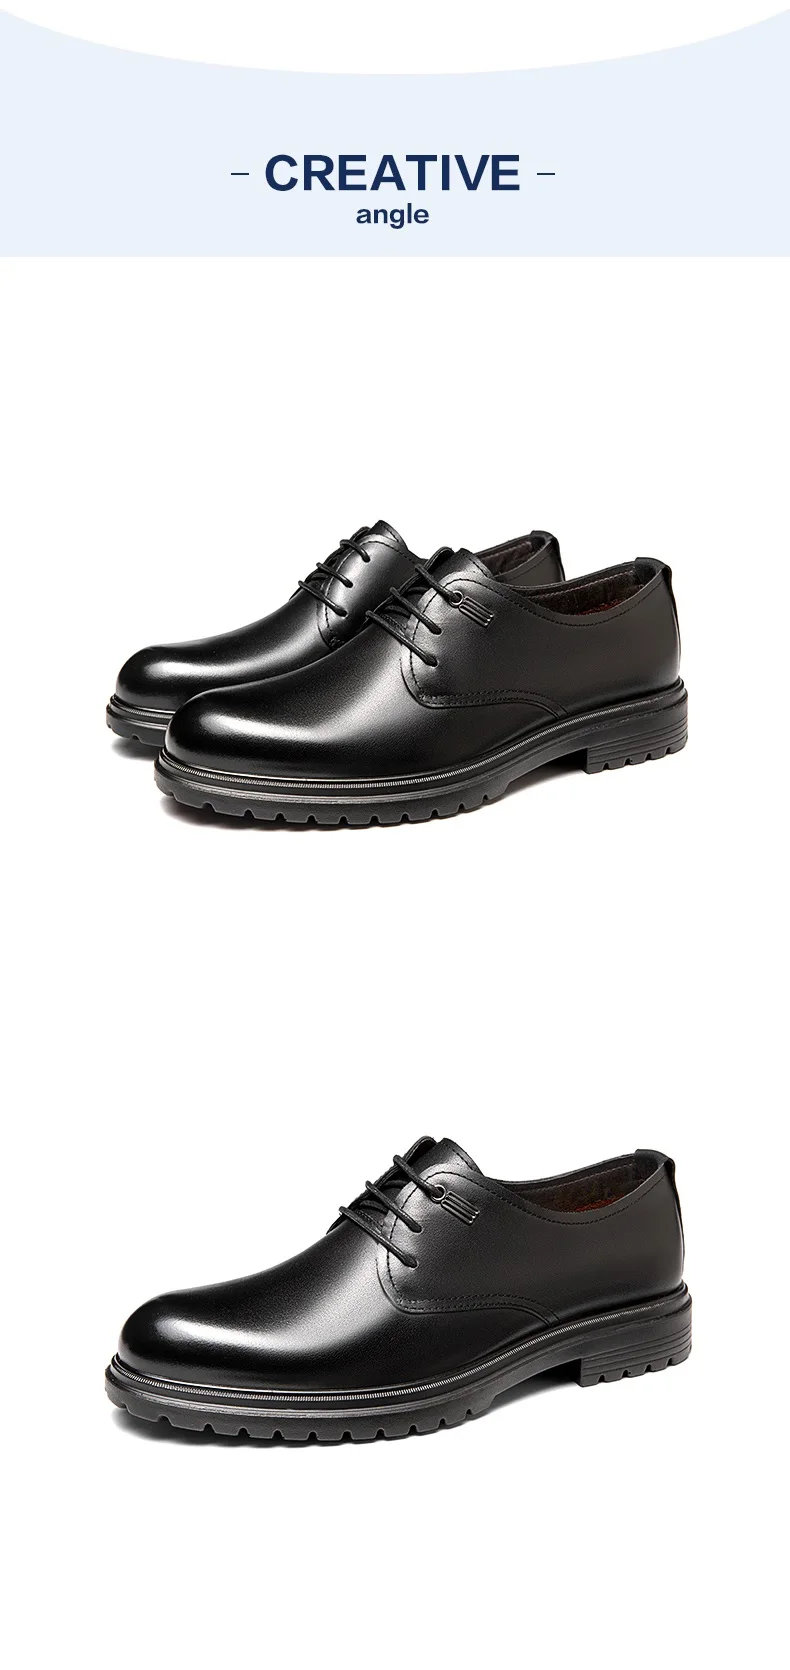 AOKANG/Мужские модельные туфли из натуральной кожи; черные свадебные туфли; оксфорды; официальная обувь; высококачественные мужские туфли «Дерби» из коровьей кожи в деловом стиле